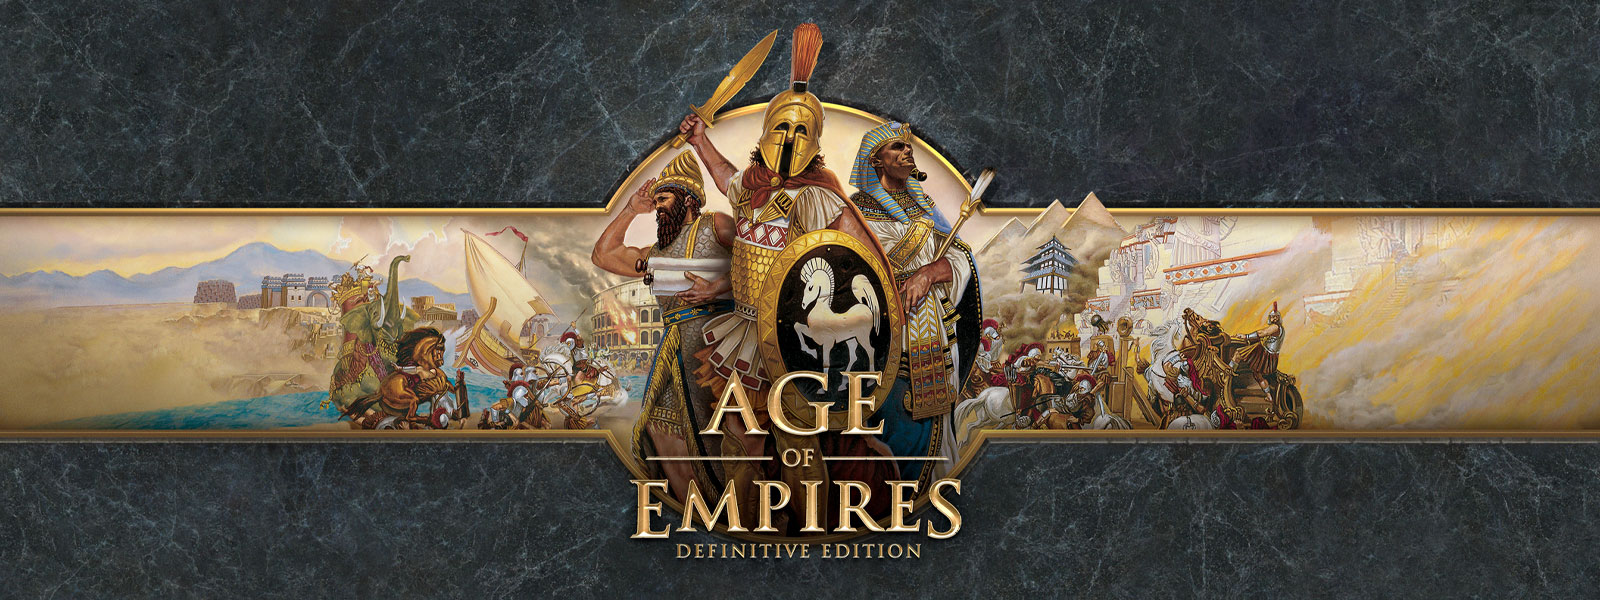 Logo Age of Empires: Definitive Edition sur fond d’ardoise grise représentant des chefs de guerre et leurs armées